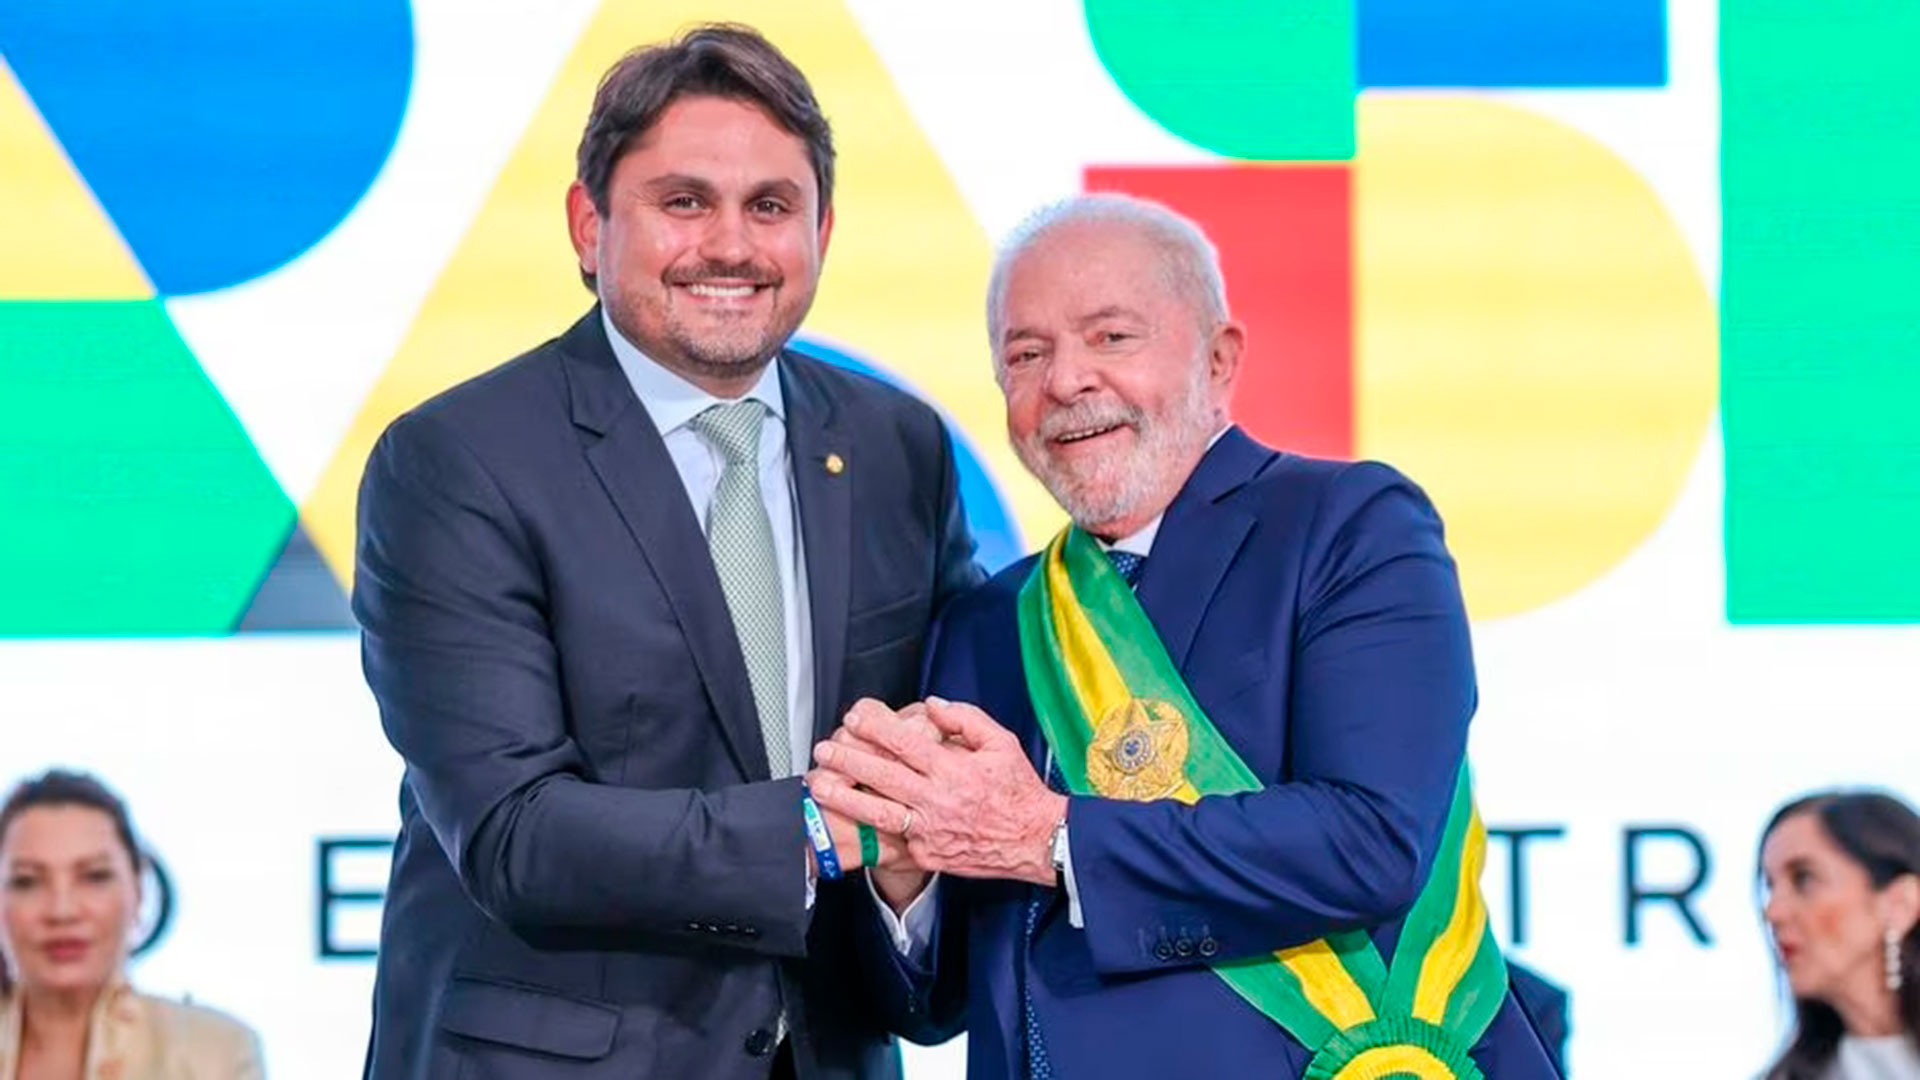 Juscelino Filho fue señalado por actos de corrupción, ante lo que Lula sentenció que "debe probar su inocencia" para continuar en el gabinete 